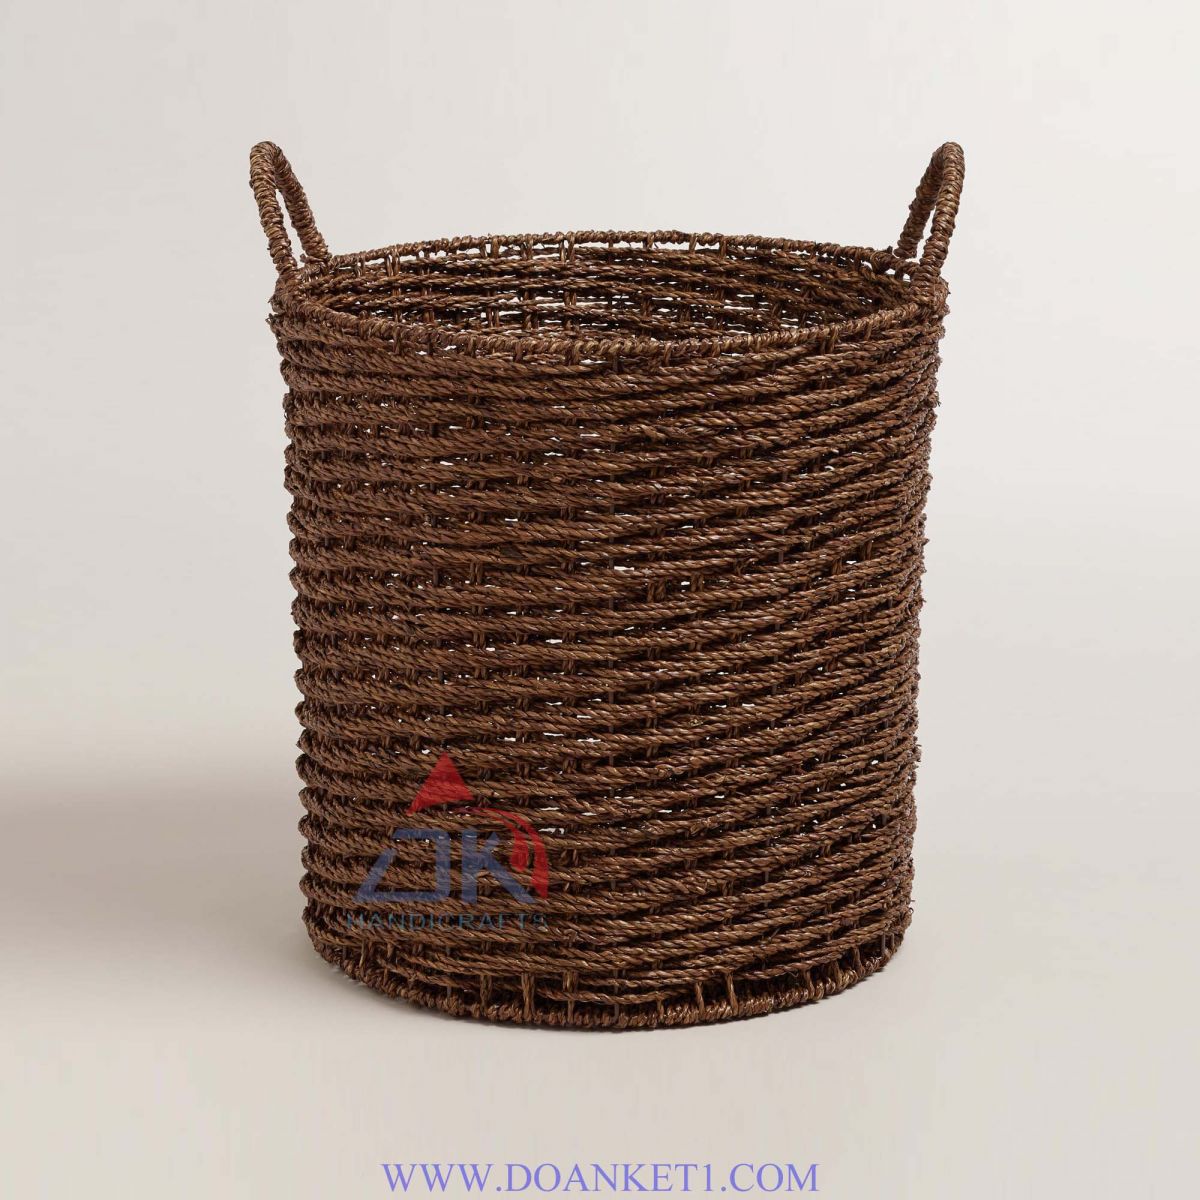 Seagrass Basket # DK252